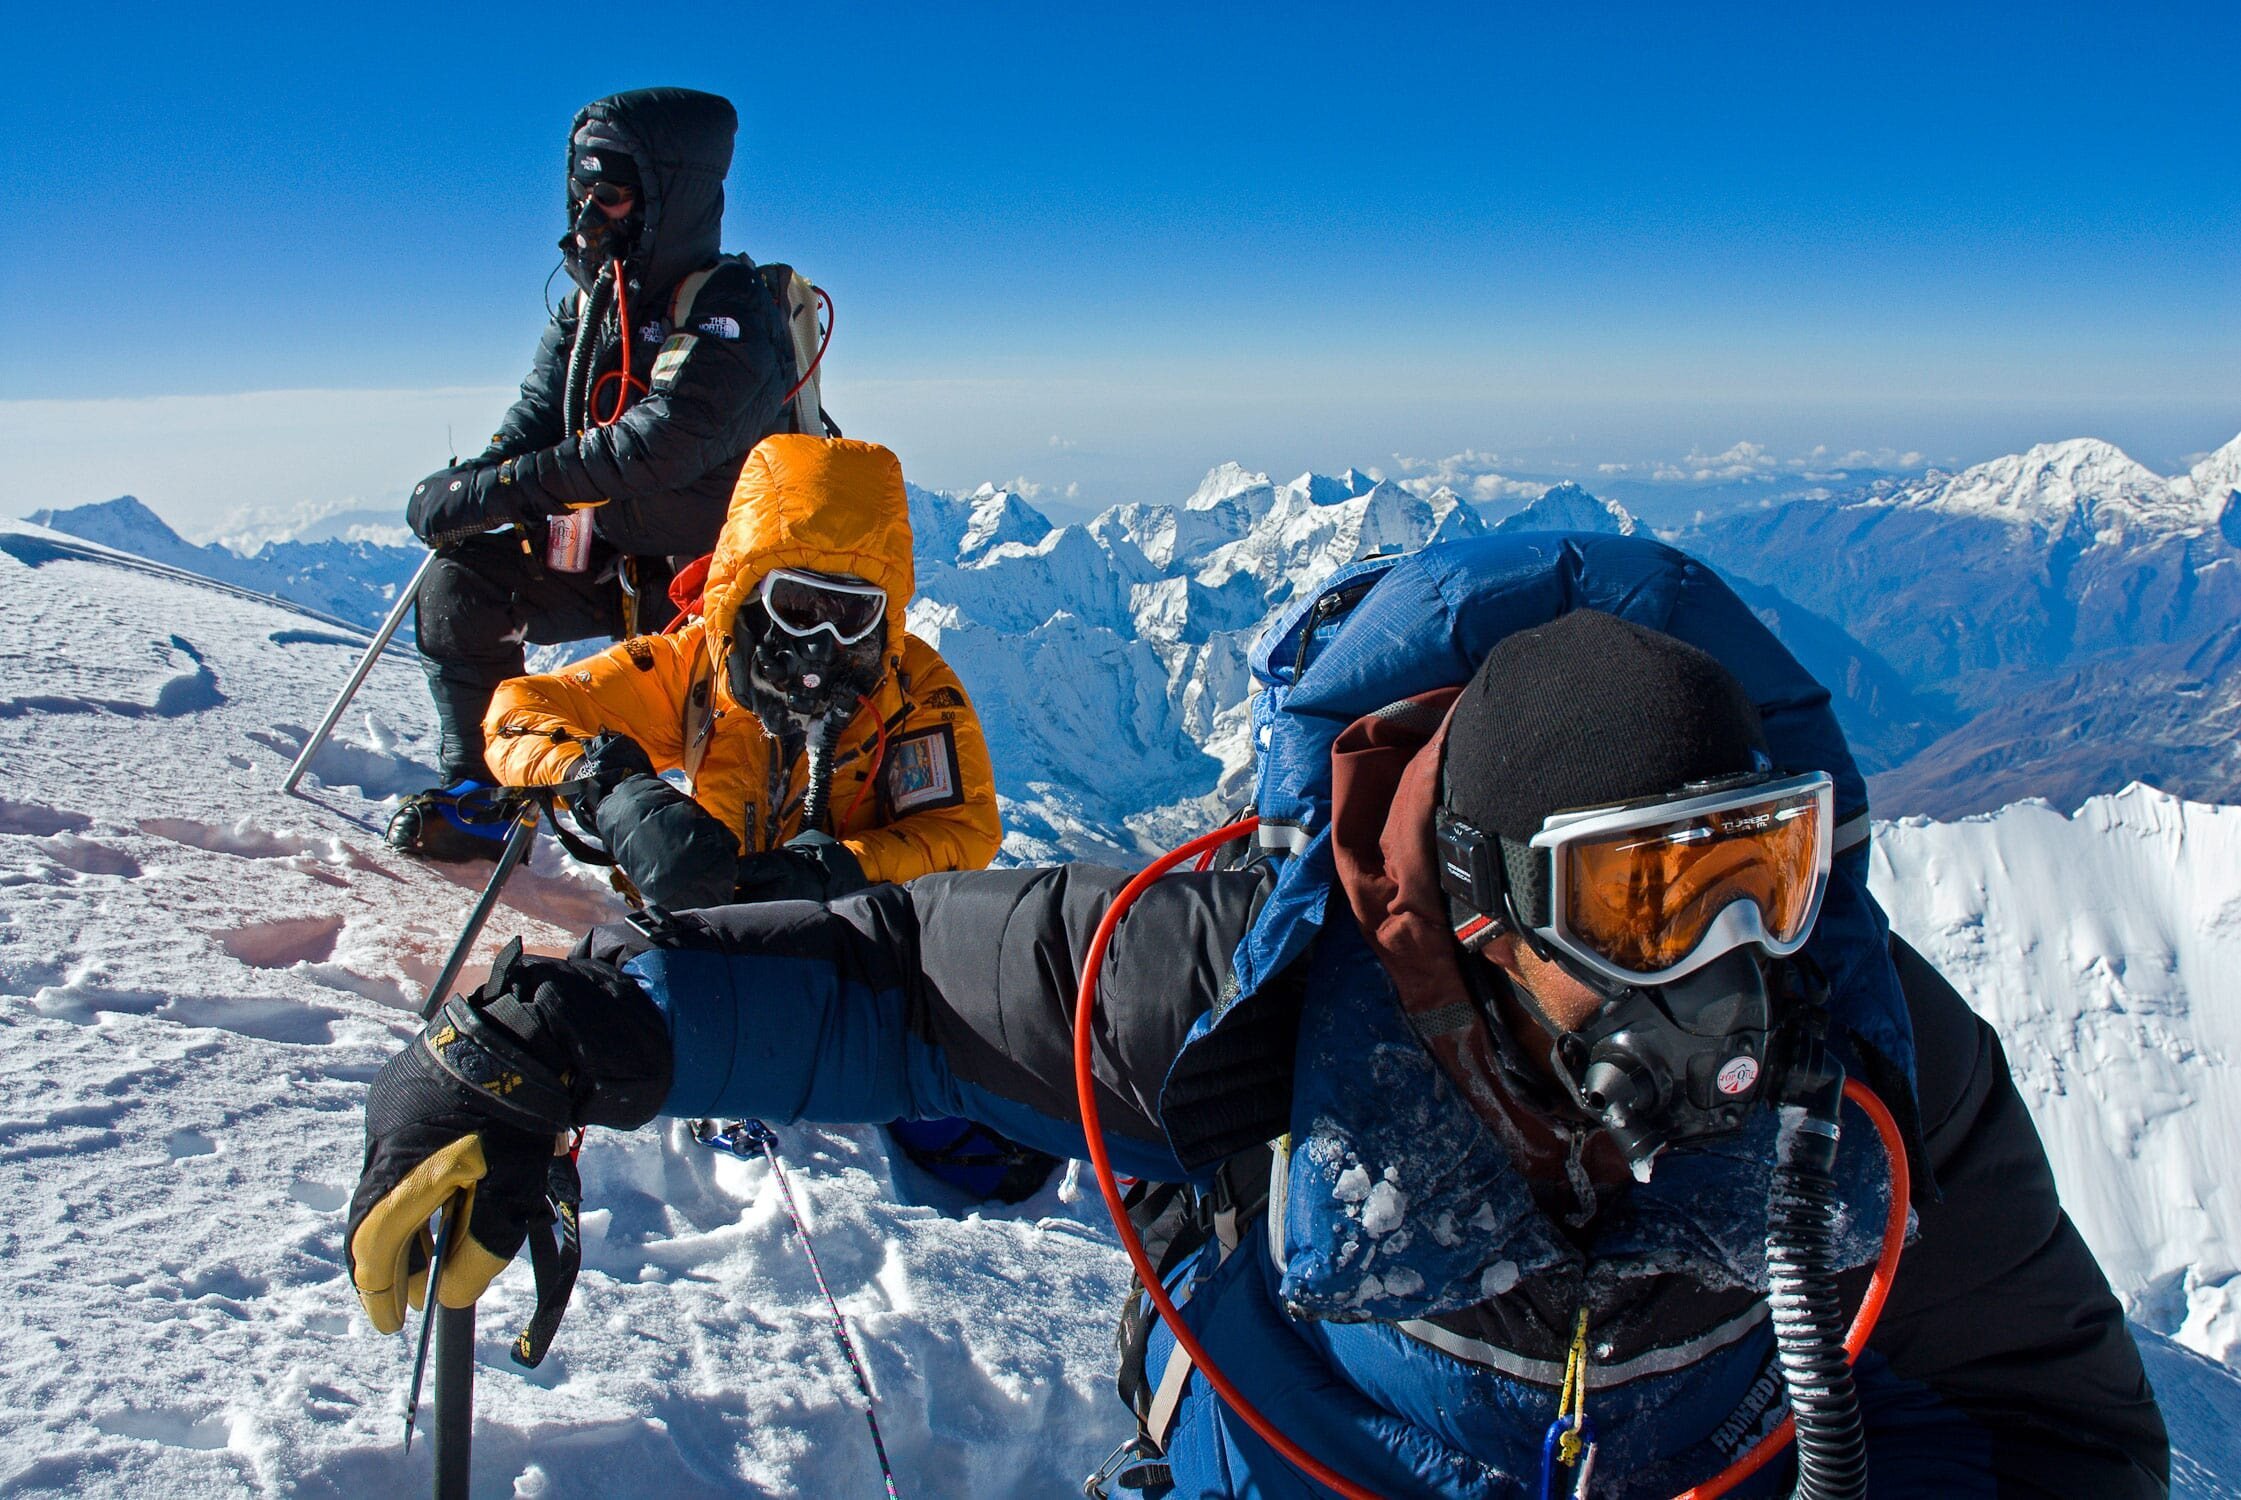 Воздух в горах кислород. Кислородная маска Эверест. Восхождение на Эверест. Экипировка для восхождения на Эверест. Эверест гора восхождение.